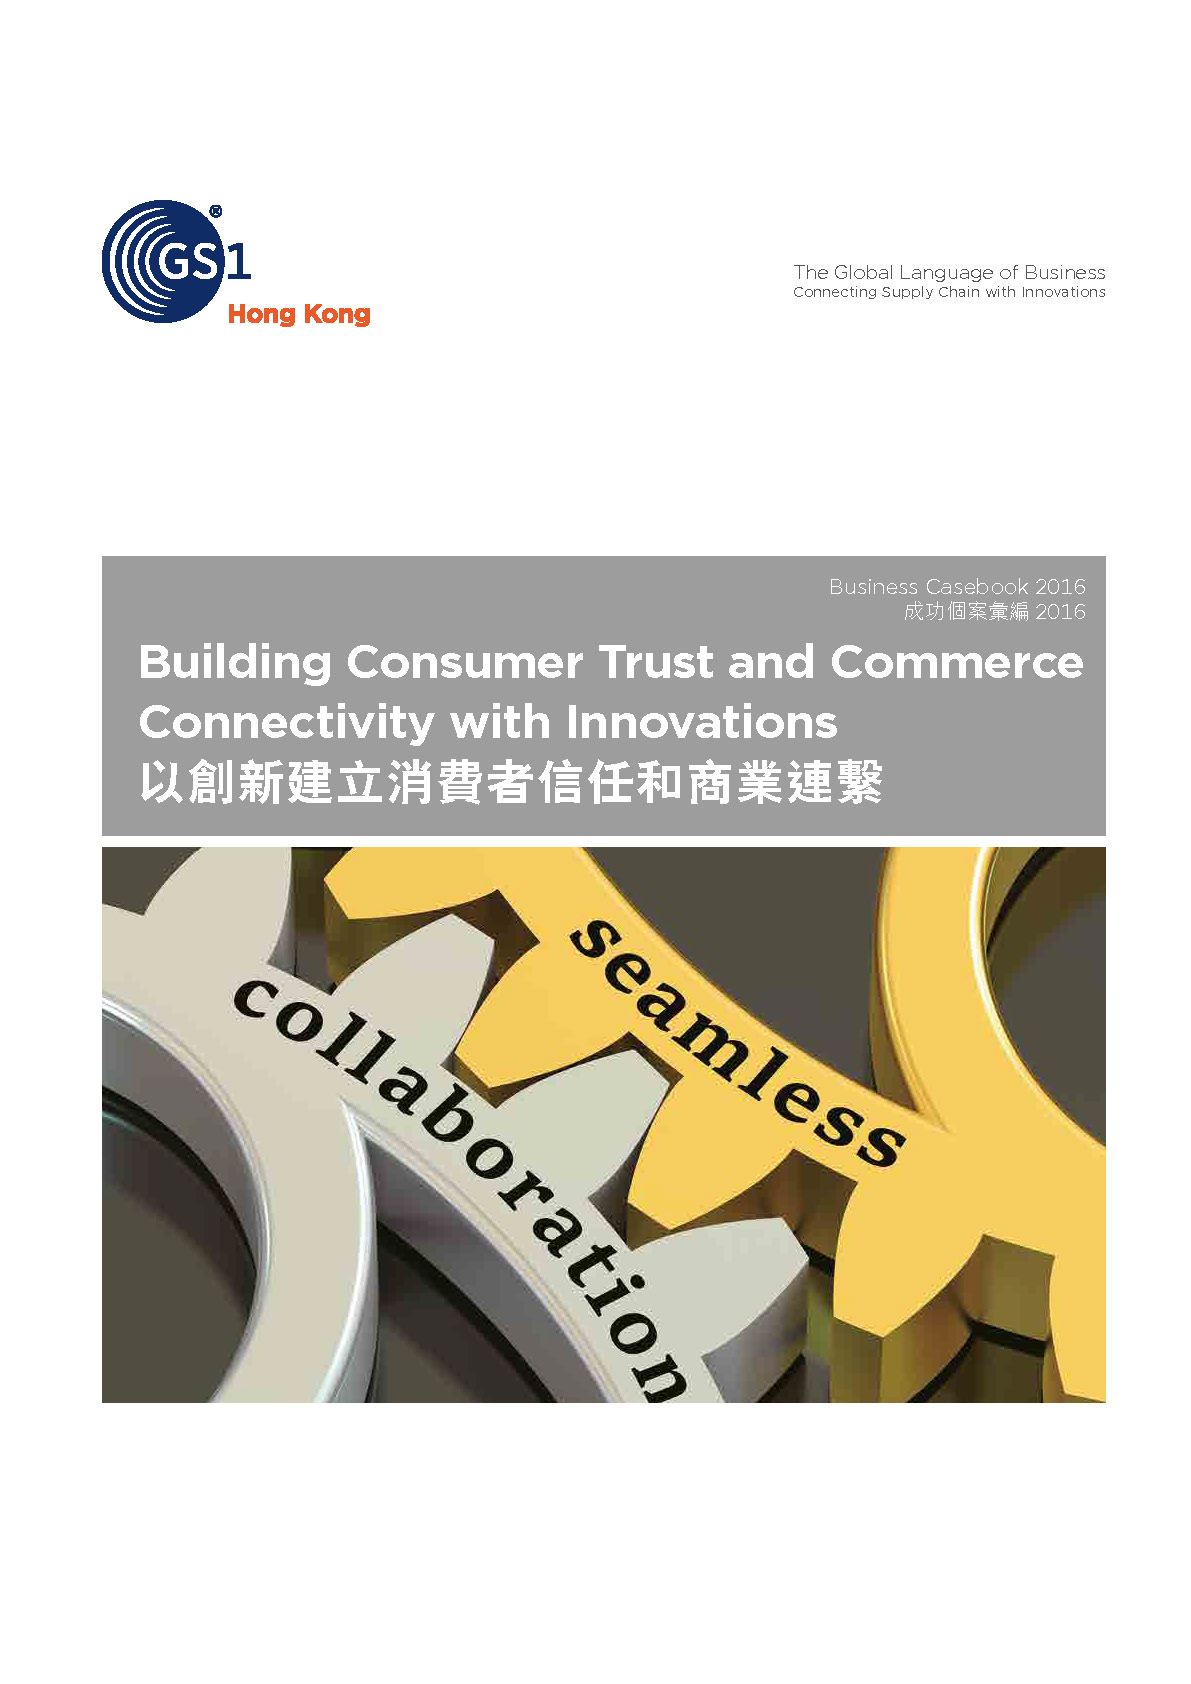 GS1 HK Business Casebook 2016